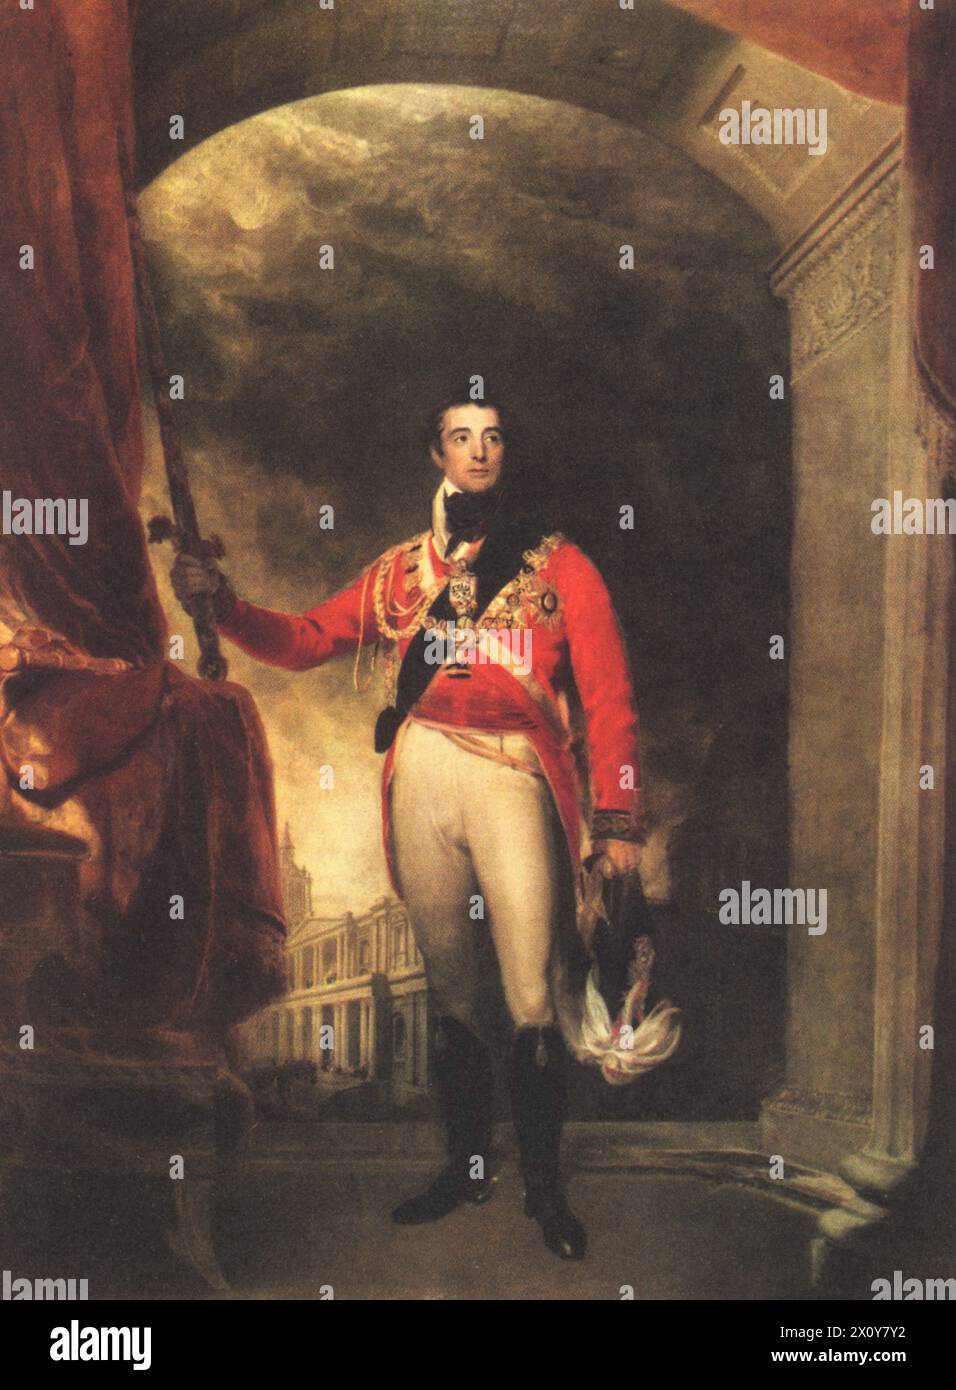 Arthur Wellesley, 1er duc de Wellington (1769-1852), 1814-15. Par Sir Thomas Lawrence (1769-1830). Le duc de Wellington était un soldat anglo-irlandais et un homme d'État conservateur. L'une des principales figures militaires et politiques de la Grande-Bretagne du XIXe siècle, il a servi deux fois comme premier ministre du Royaume-Uni. Banque D'Images